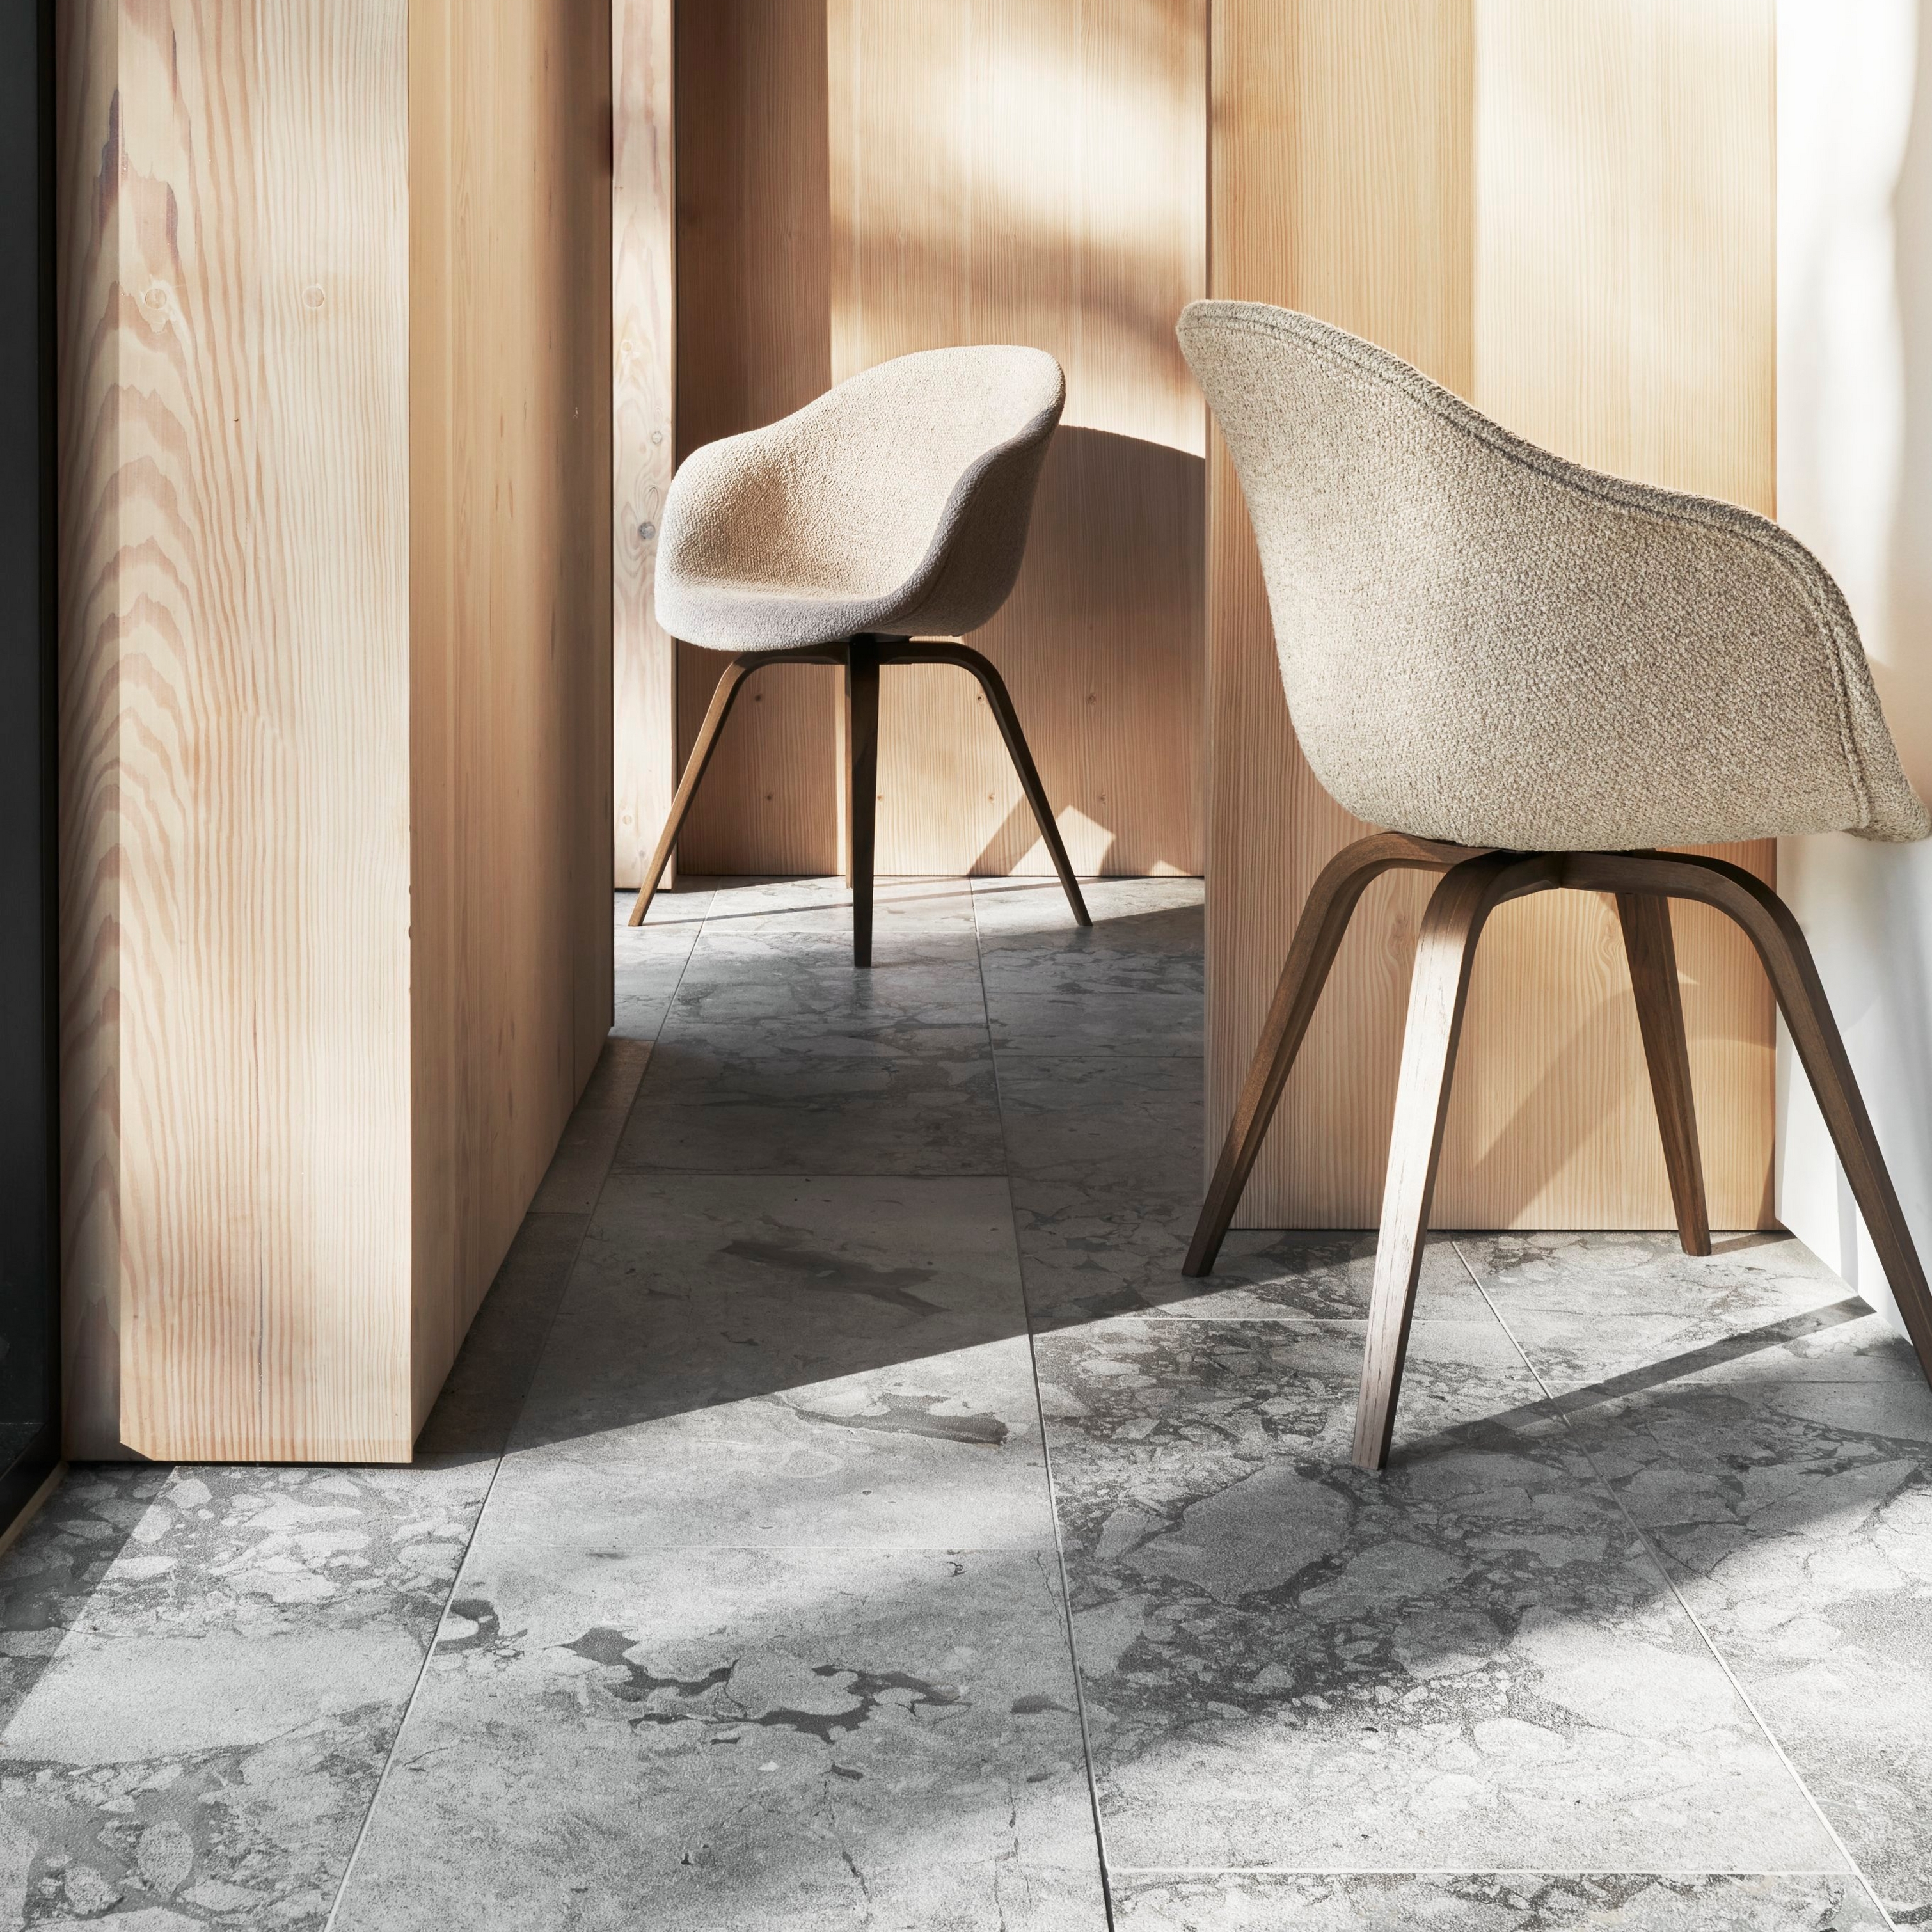 Interior iluminado pelo sol com duas cadeiras Hauge, paredes de madeira e um pavimento de mármore.